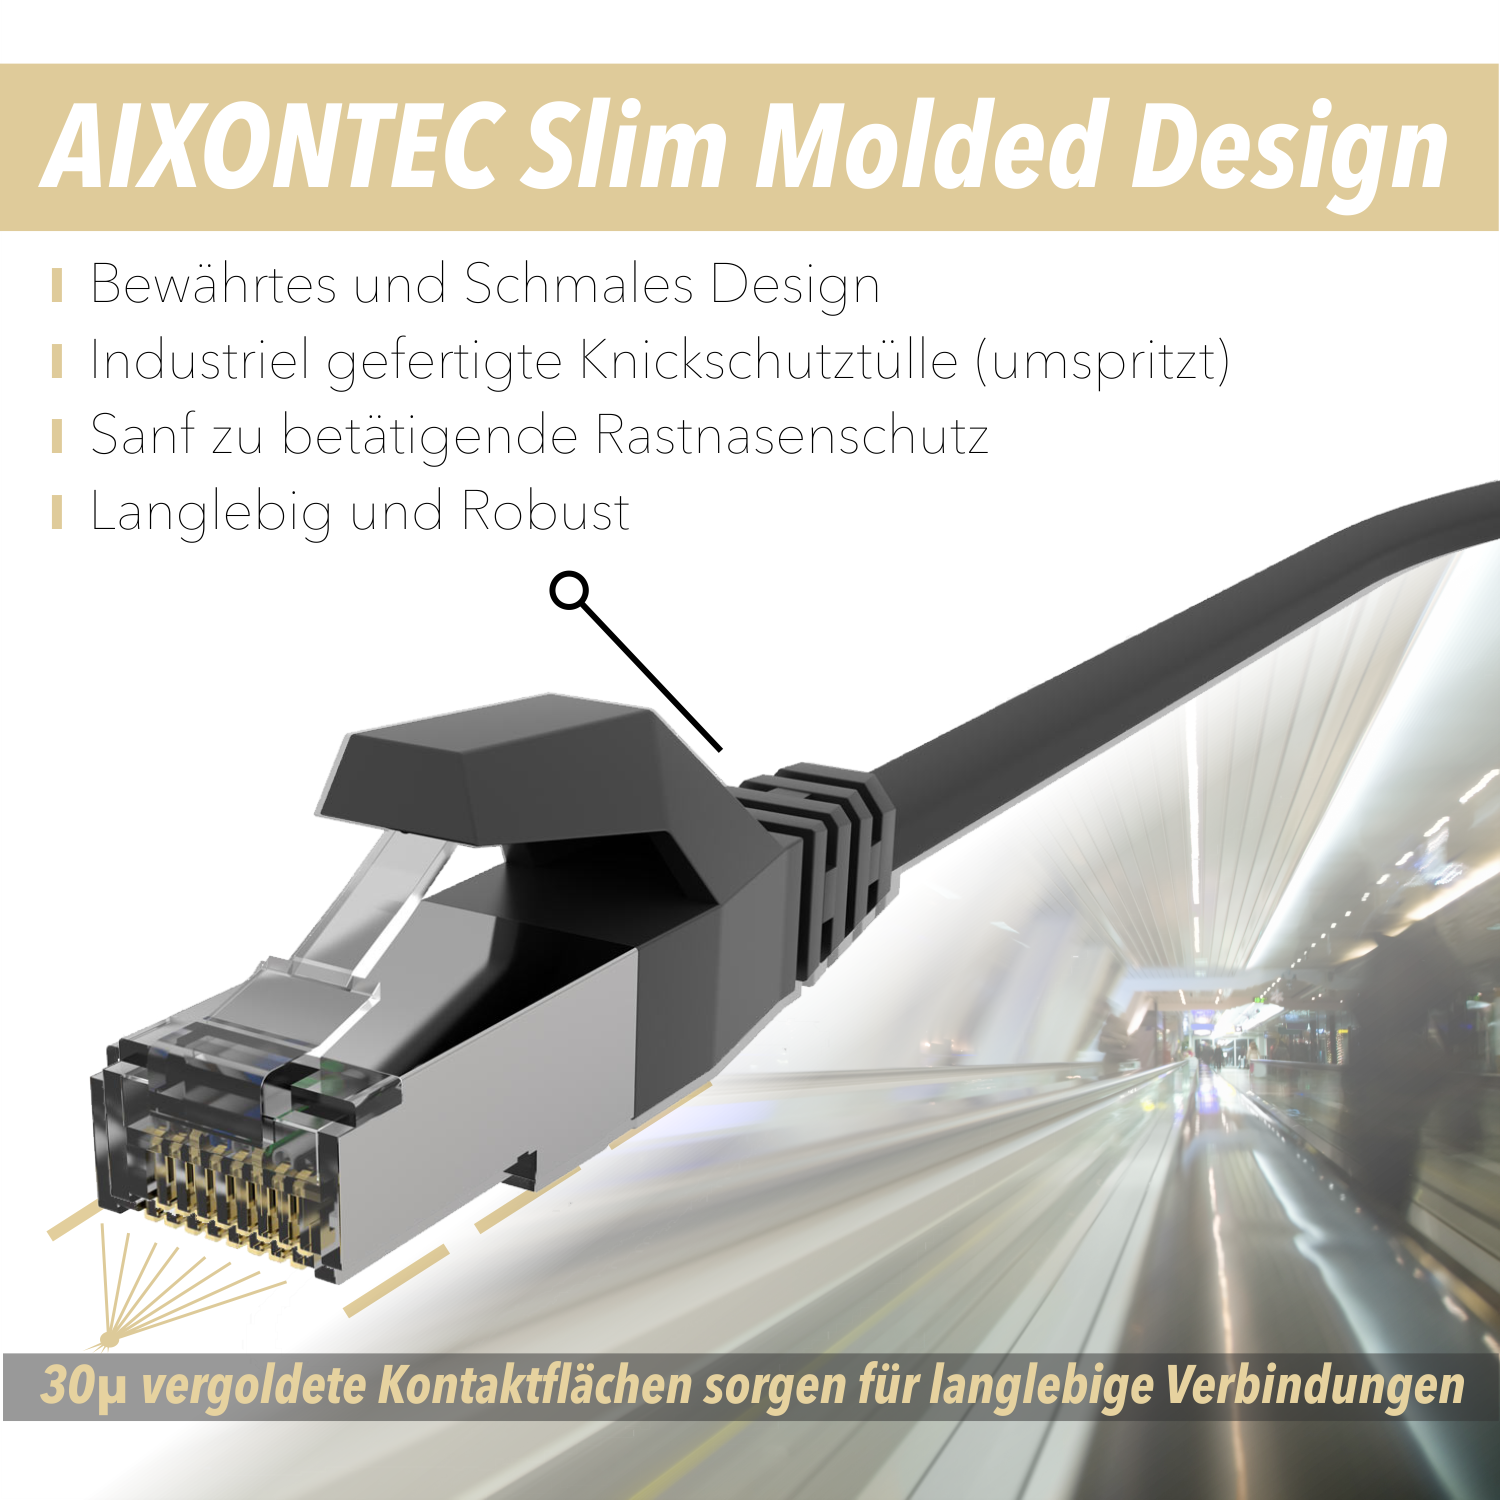 AIXONTEC 0,3m Cat.6 RJ45 Patchkabel 0,3 m 10 Gigabit, Netzwerkkabel, Lankabel Ethernetkabel